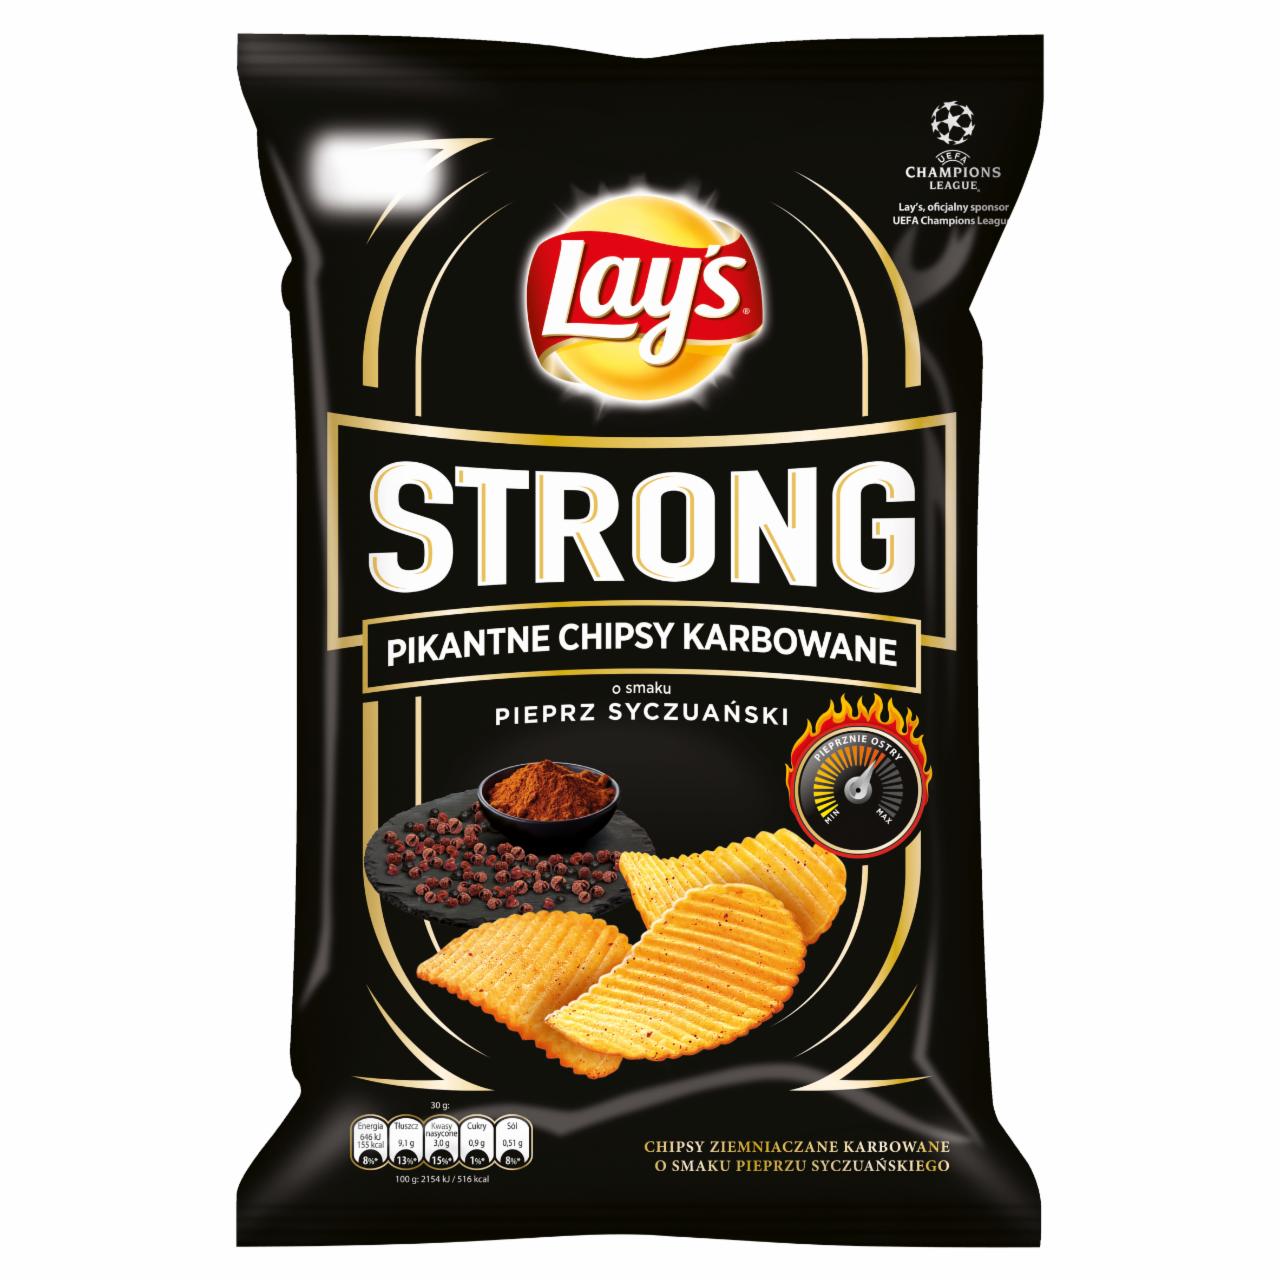 Zdjęcia - Lay's Strong Pikantne chipsy karbowane o smaku pieprz syczuański 140 g